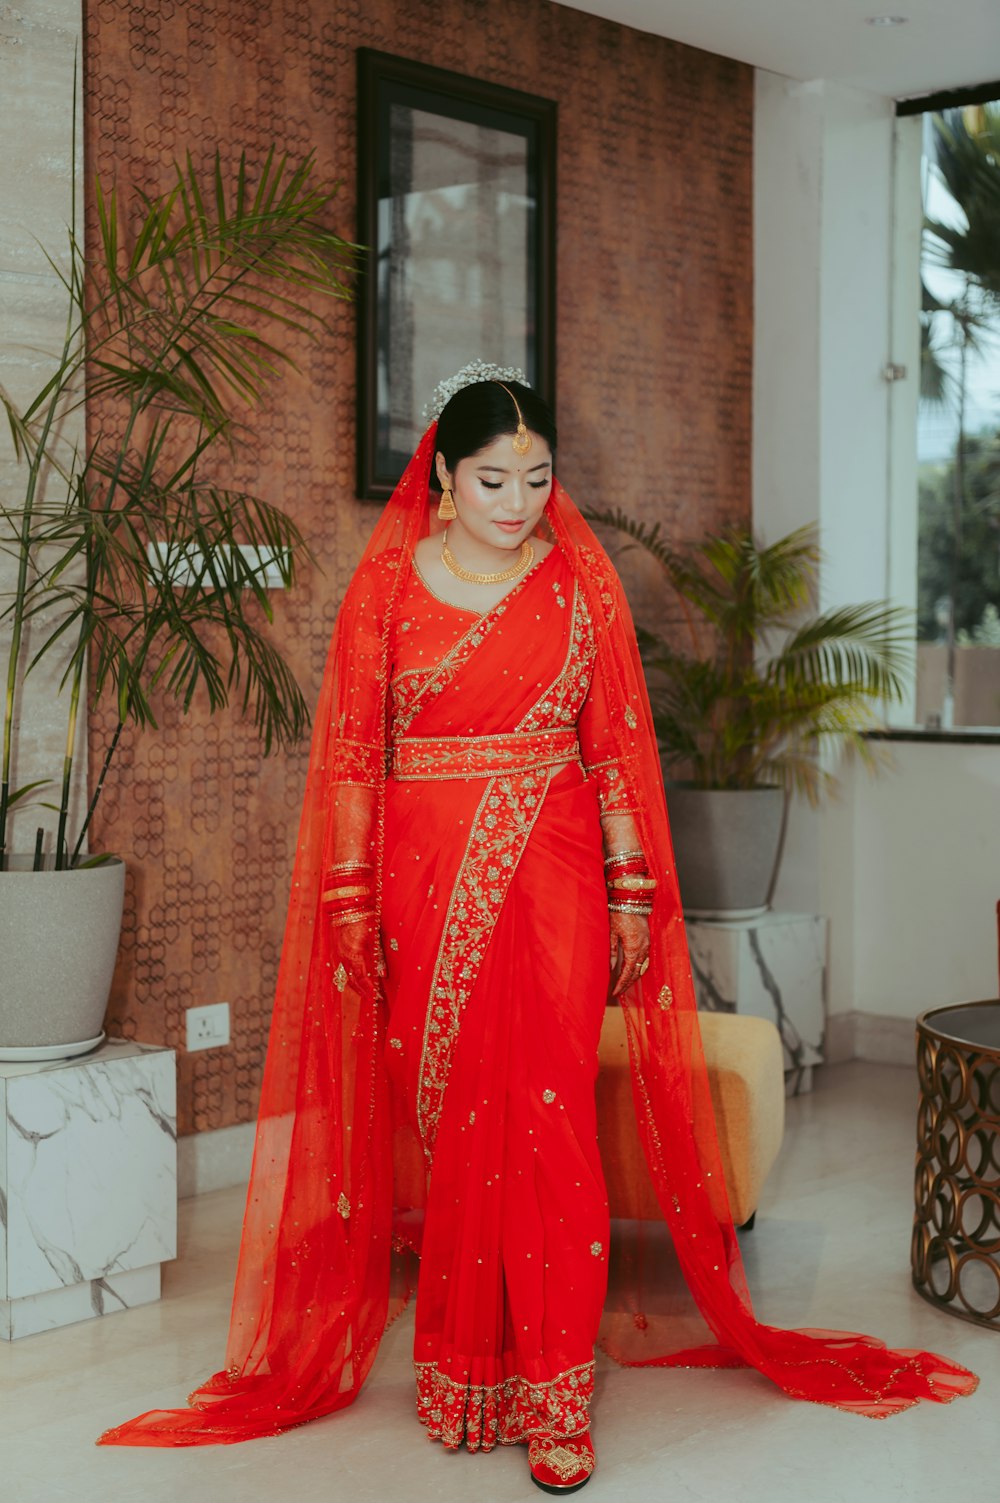 Eine Frau in einem roten Sari steht vor einer Backsteinmauer